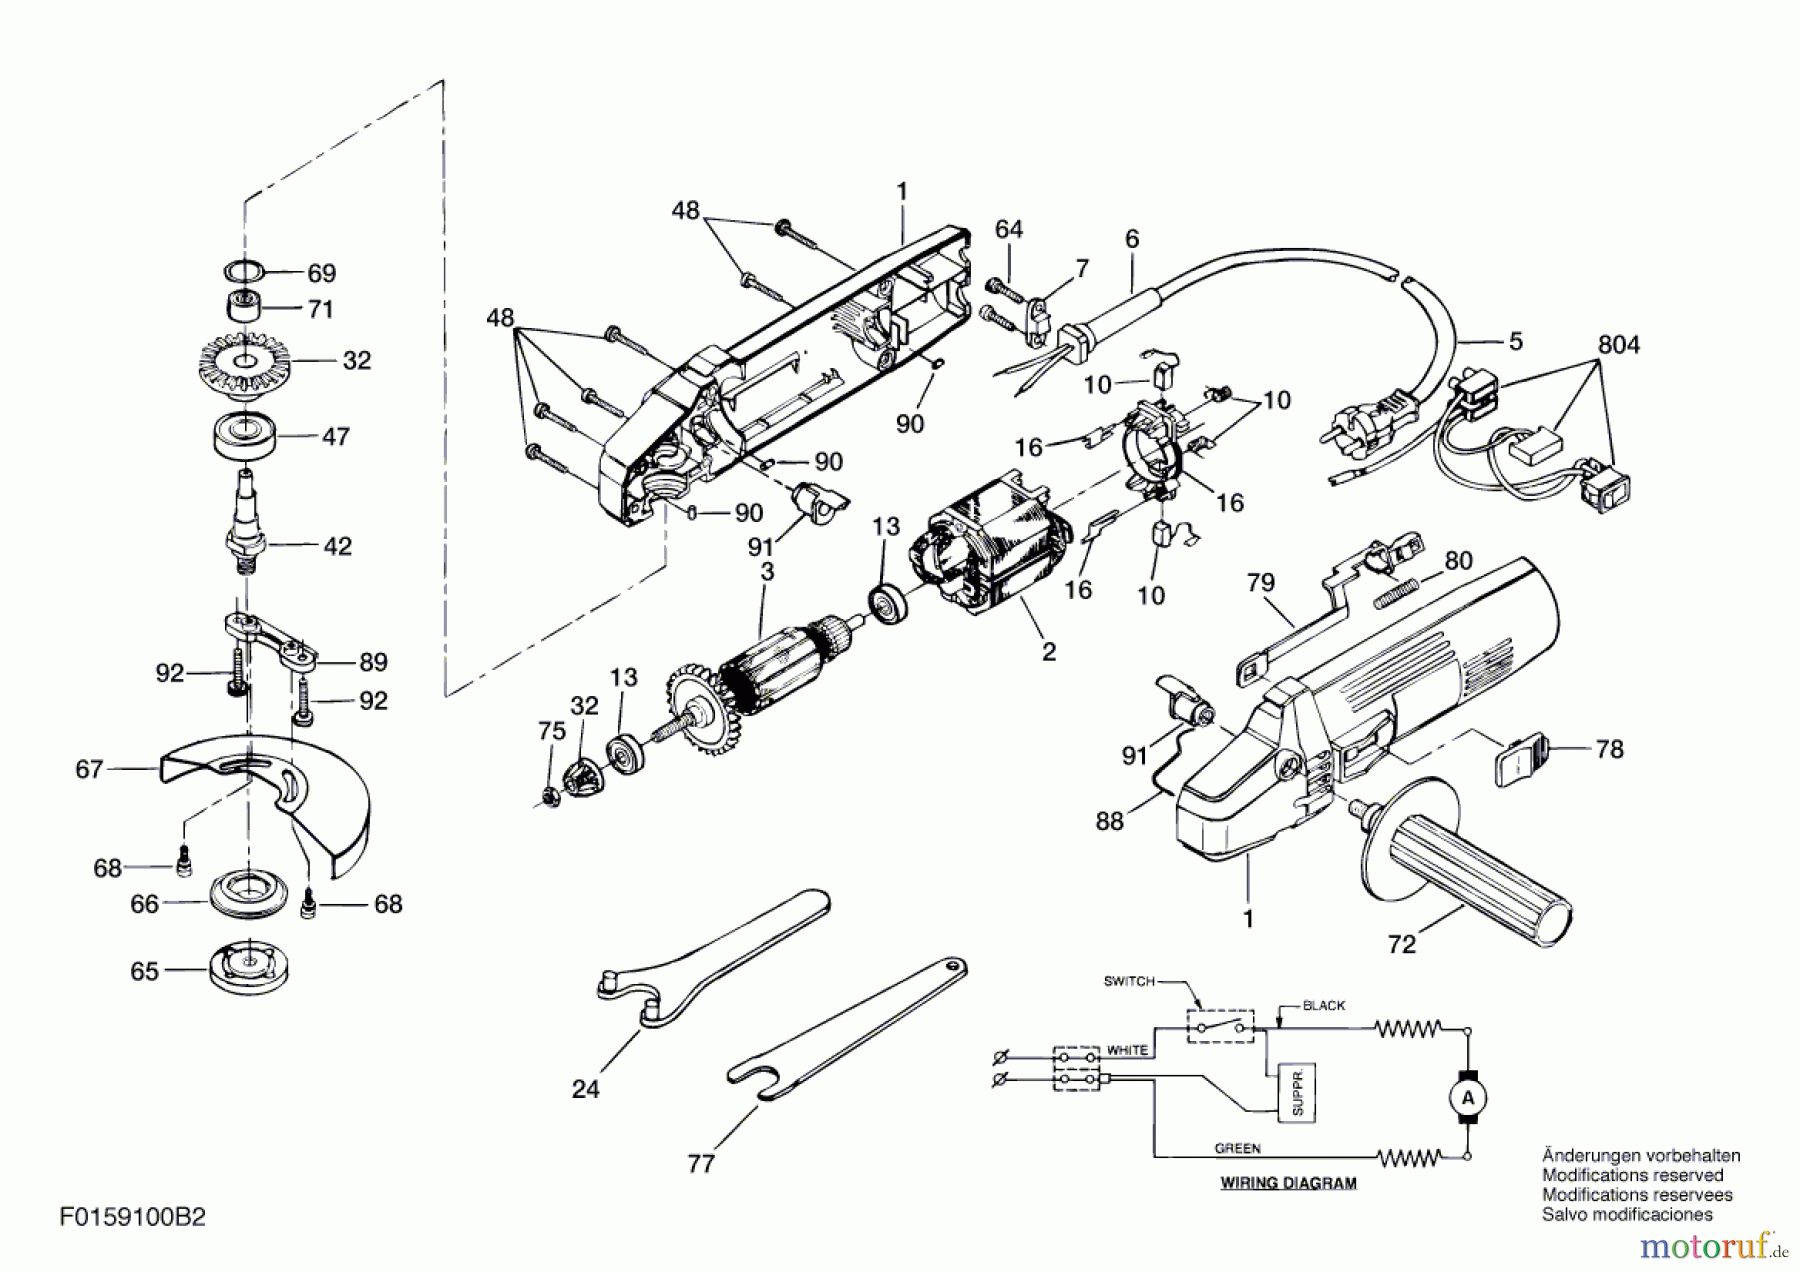  Bosch Werkzeug Hw-Winkelschleifer 9100 H2 Seite 1